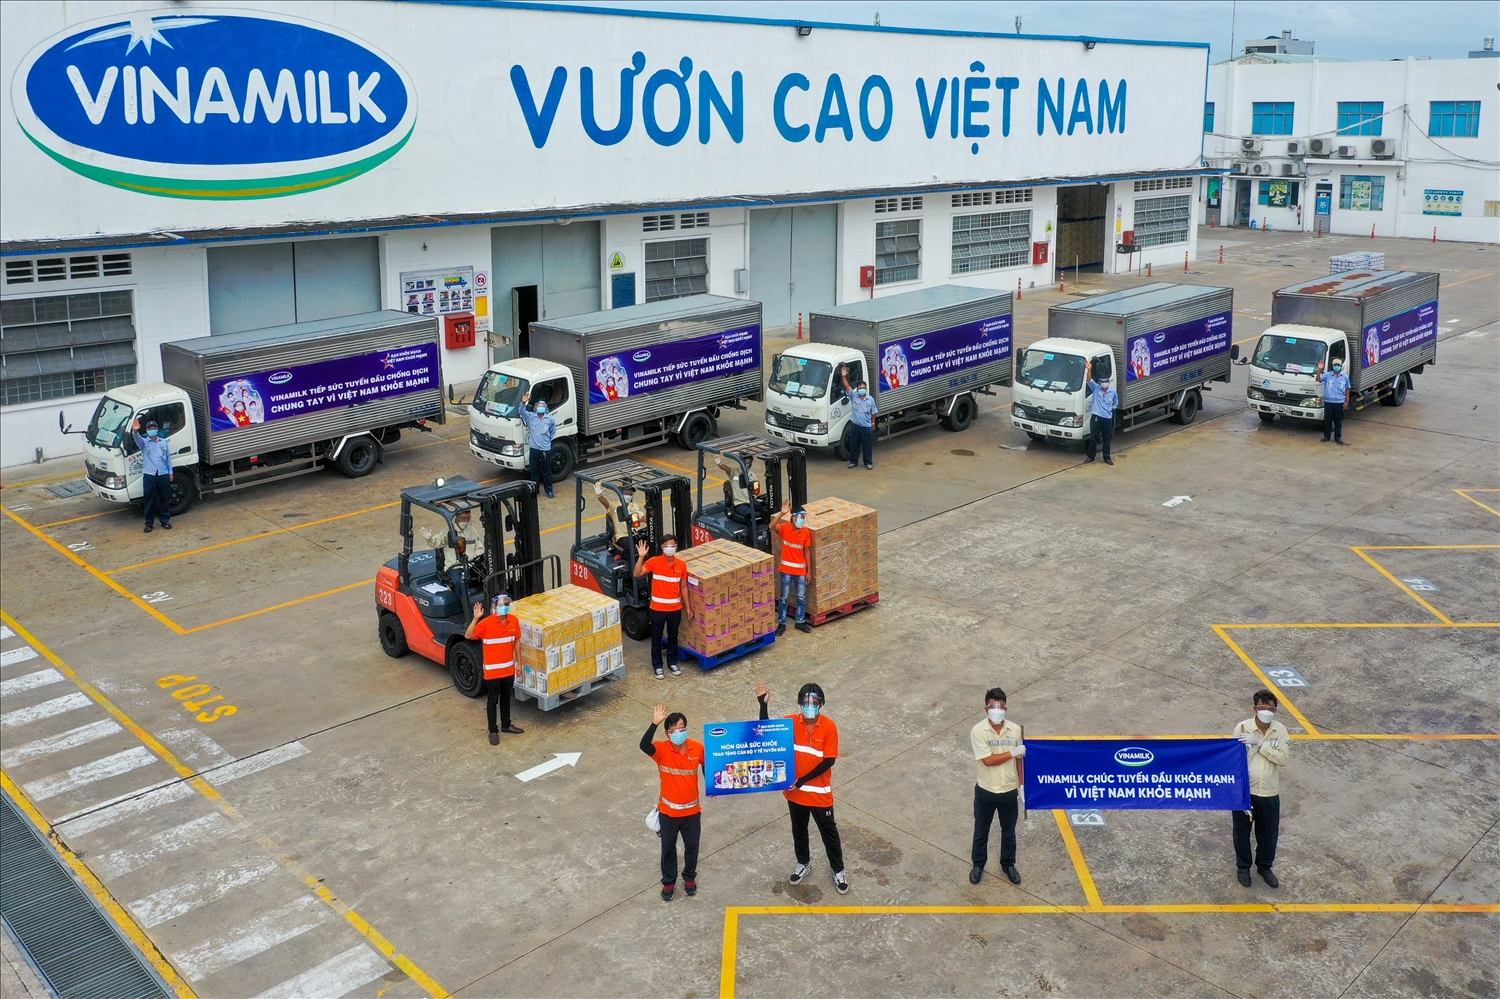 Các chuyến xe với thông điệp “Tuyến đầu khỏe mạnh, vì Việt Nam khỏe mạnh” đã đồng loạt khởi hành mang món quà của nhân viên Vinamilk gửi đến tuyến đầu